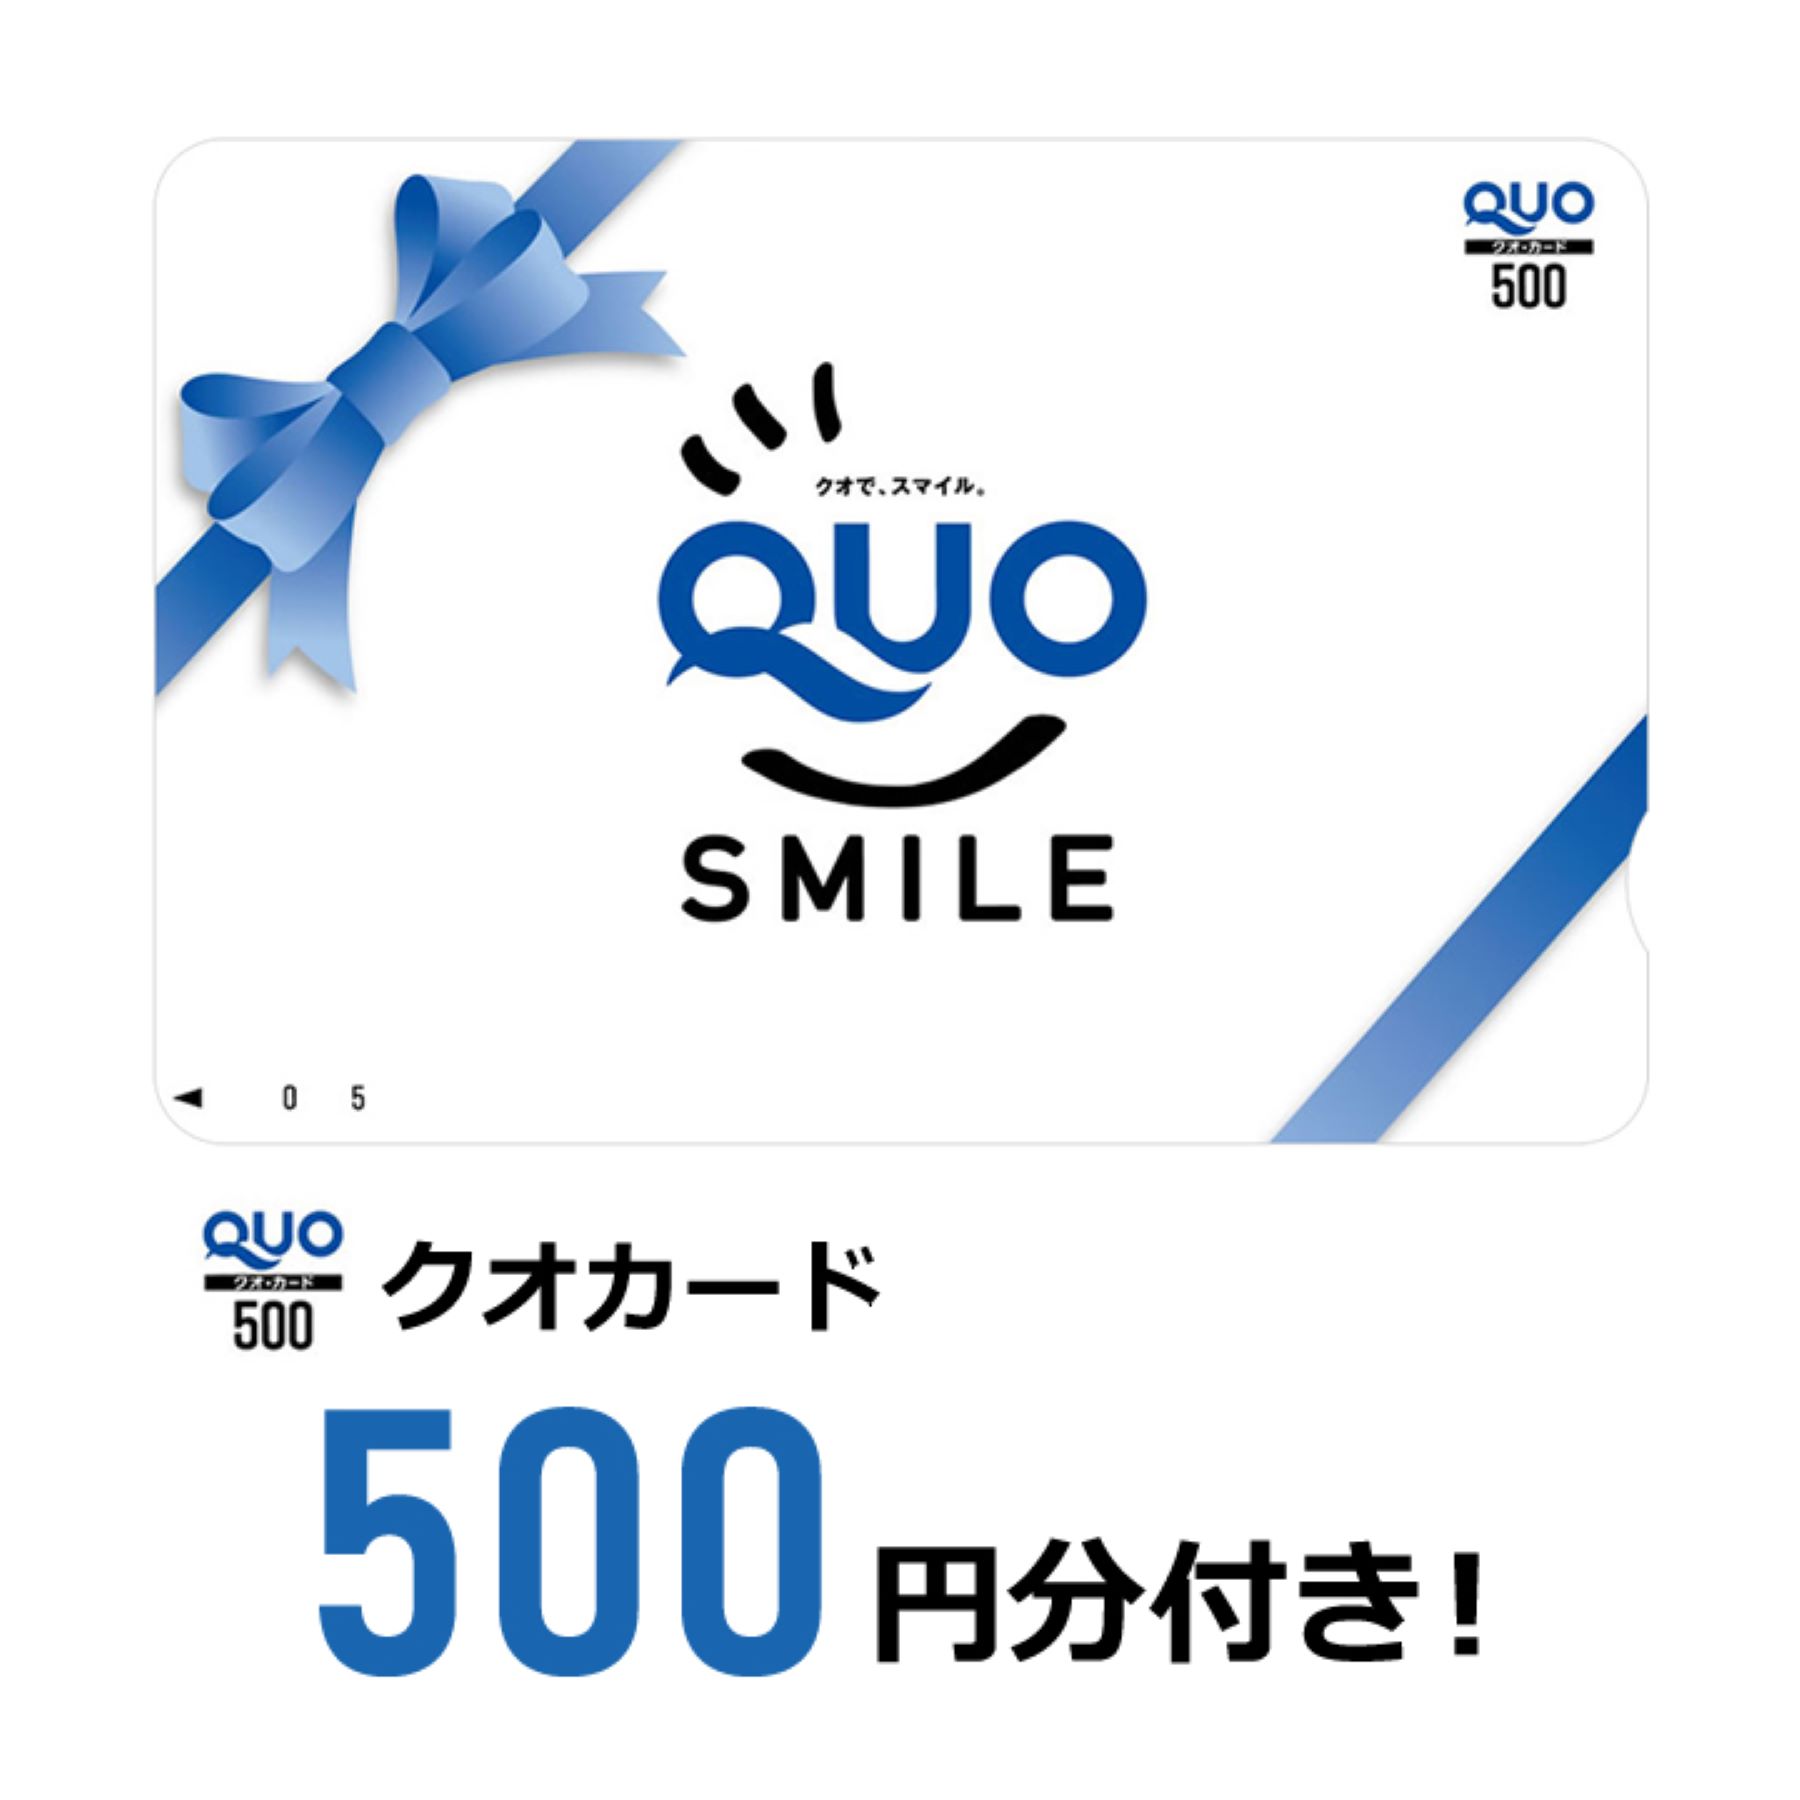 プランで500円のクオカードがついてきます。コンビニで利用可能。